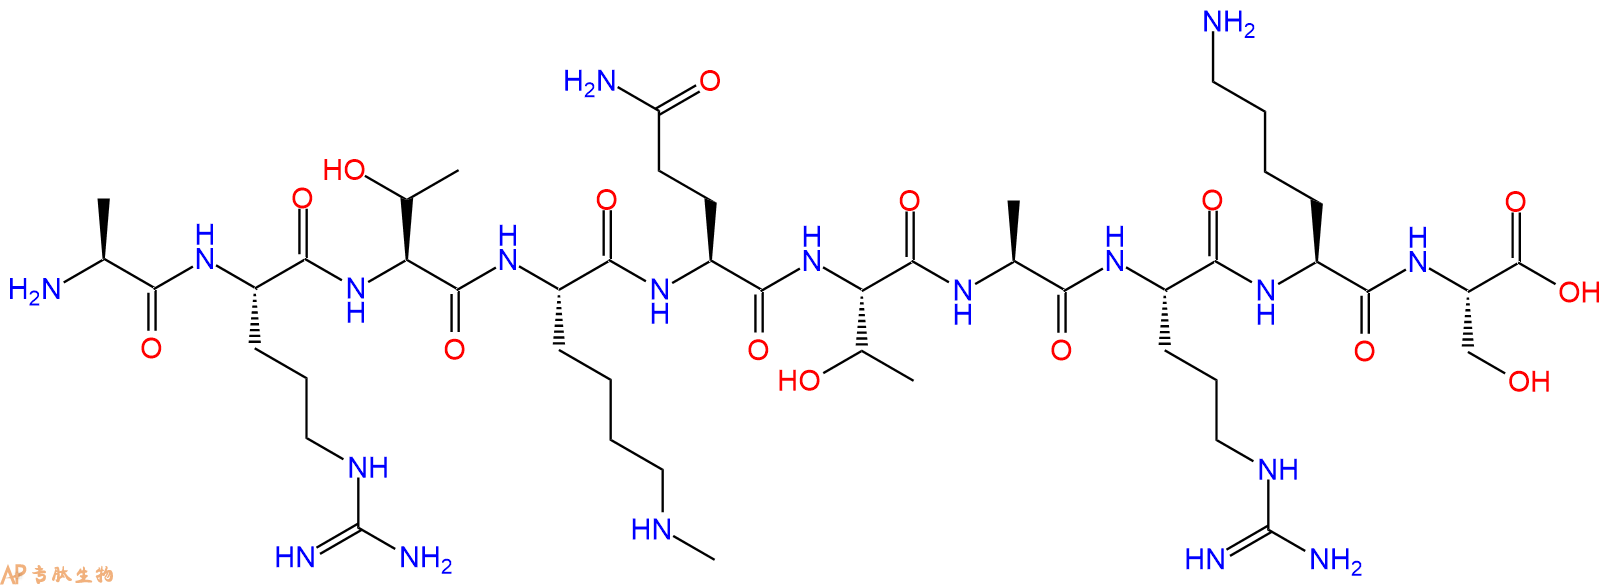 专肽生物产品组蛋白肽段[Lys(Me)4]-Histone H3(1-10), H3K4(Me1)